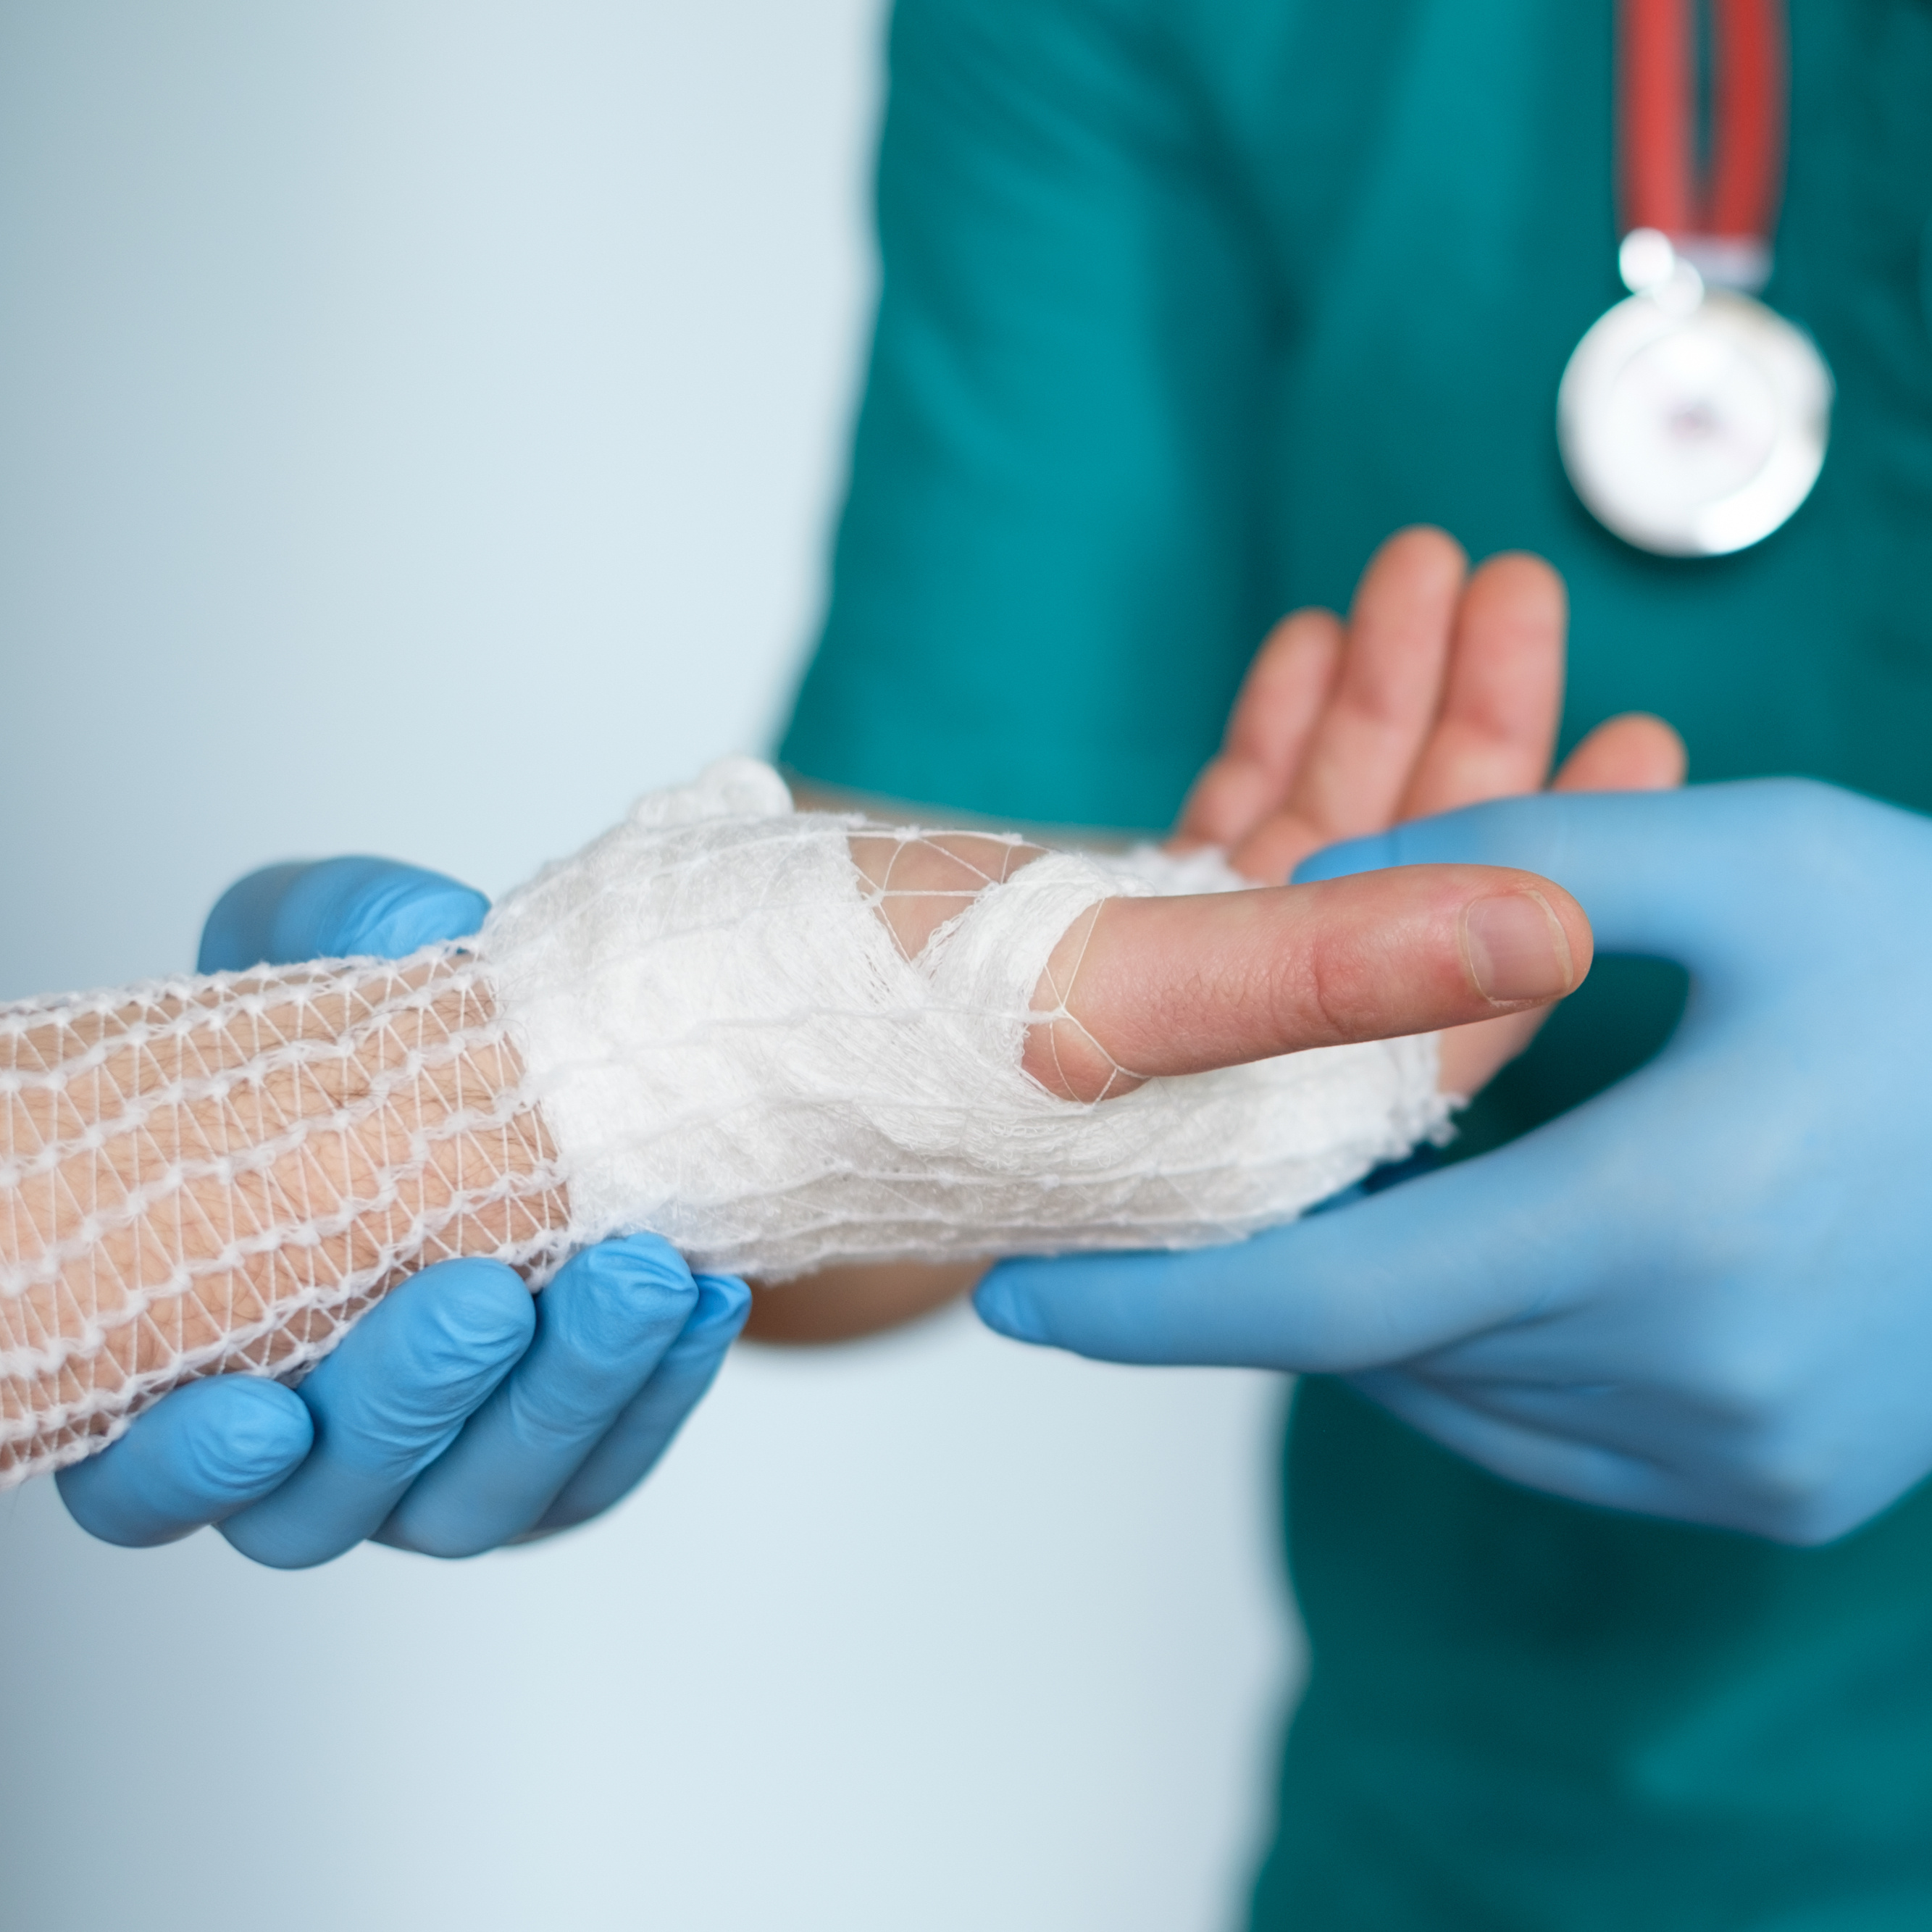 Arzt hält Hand, die mit Netzschlauchverband verbunden ist